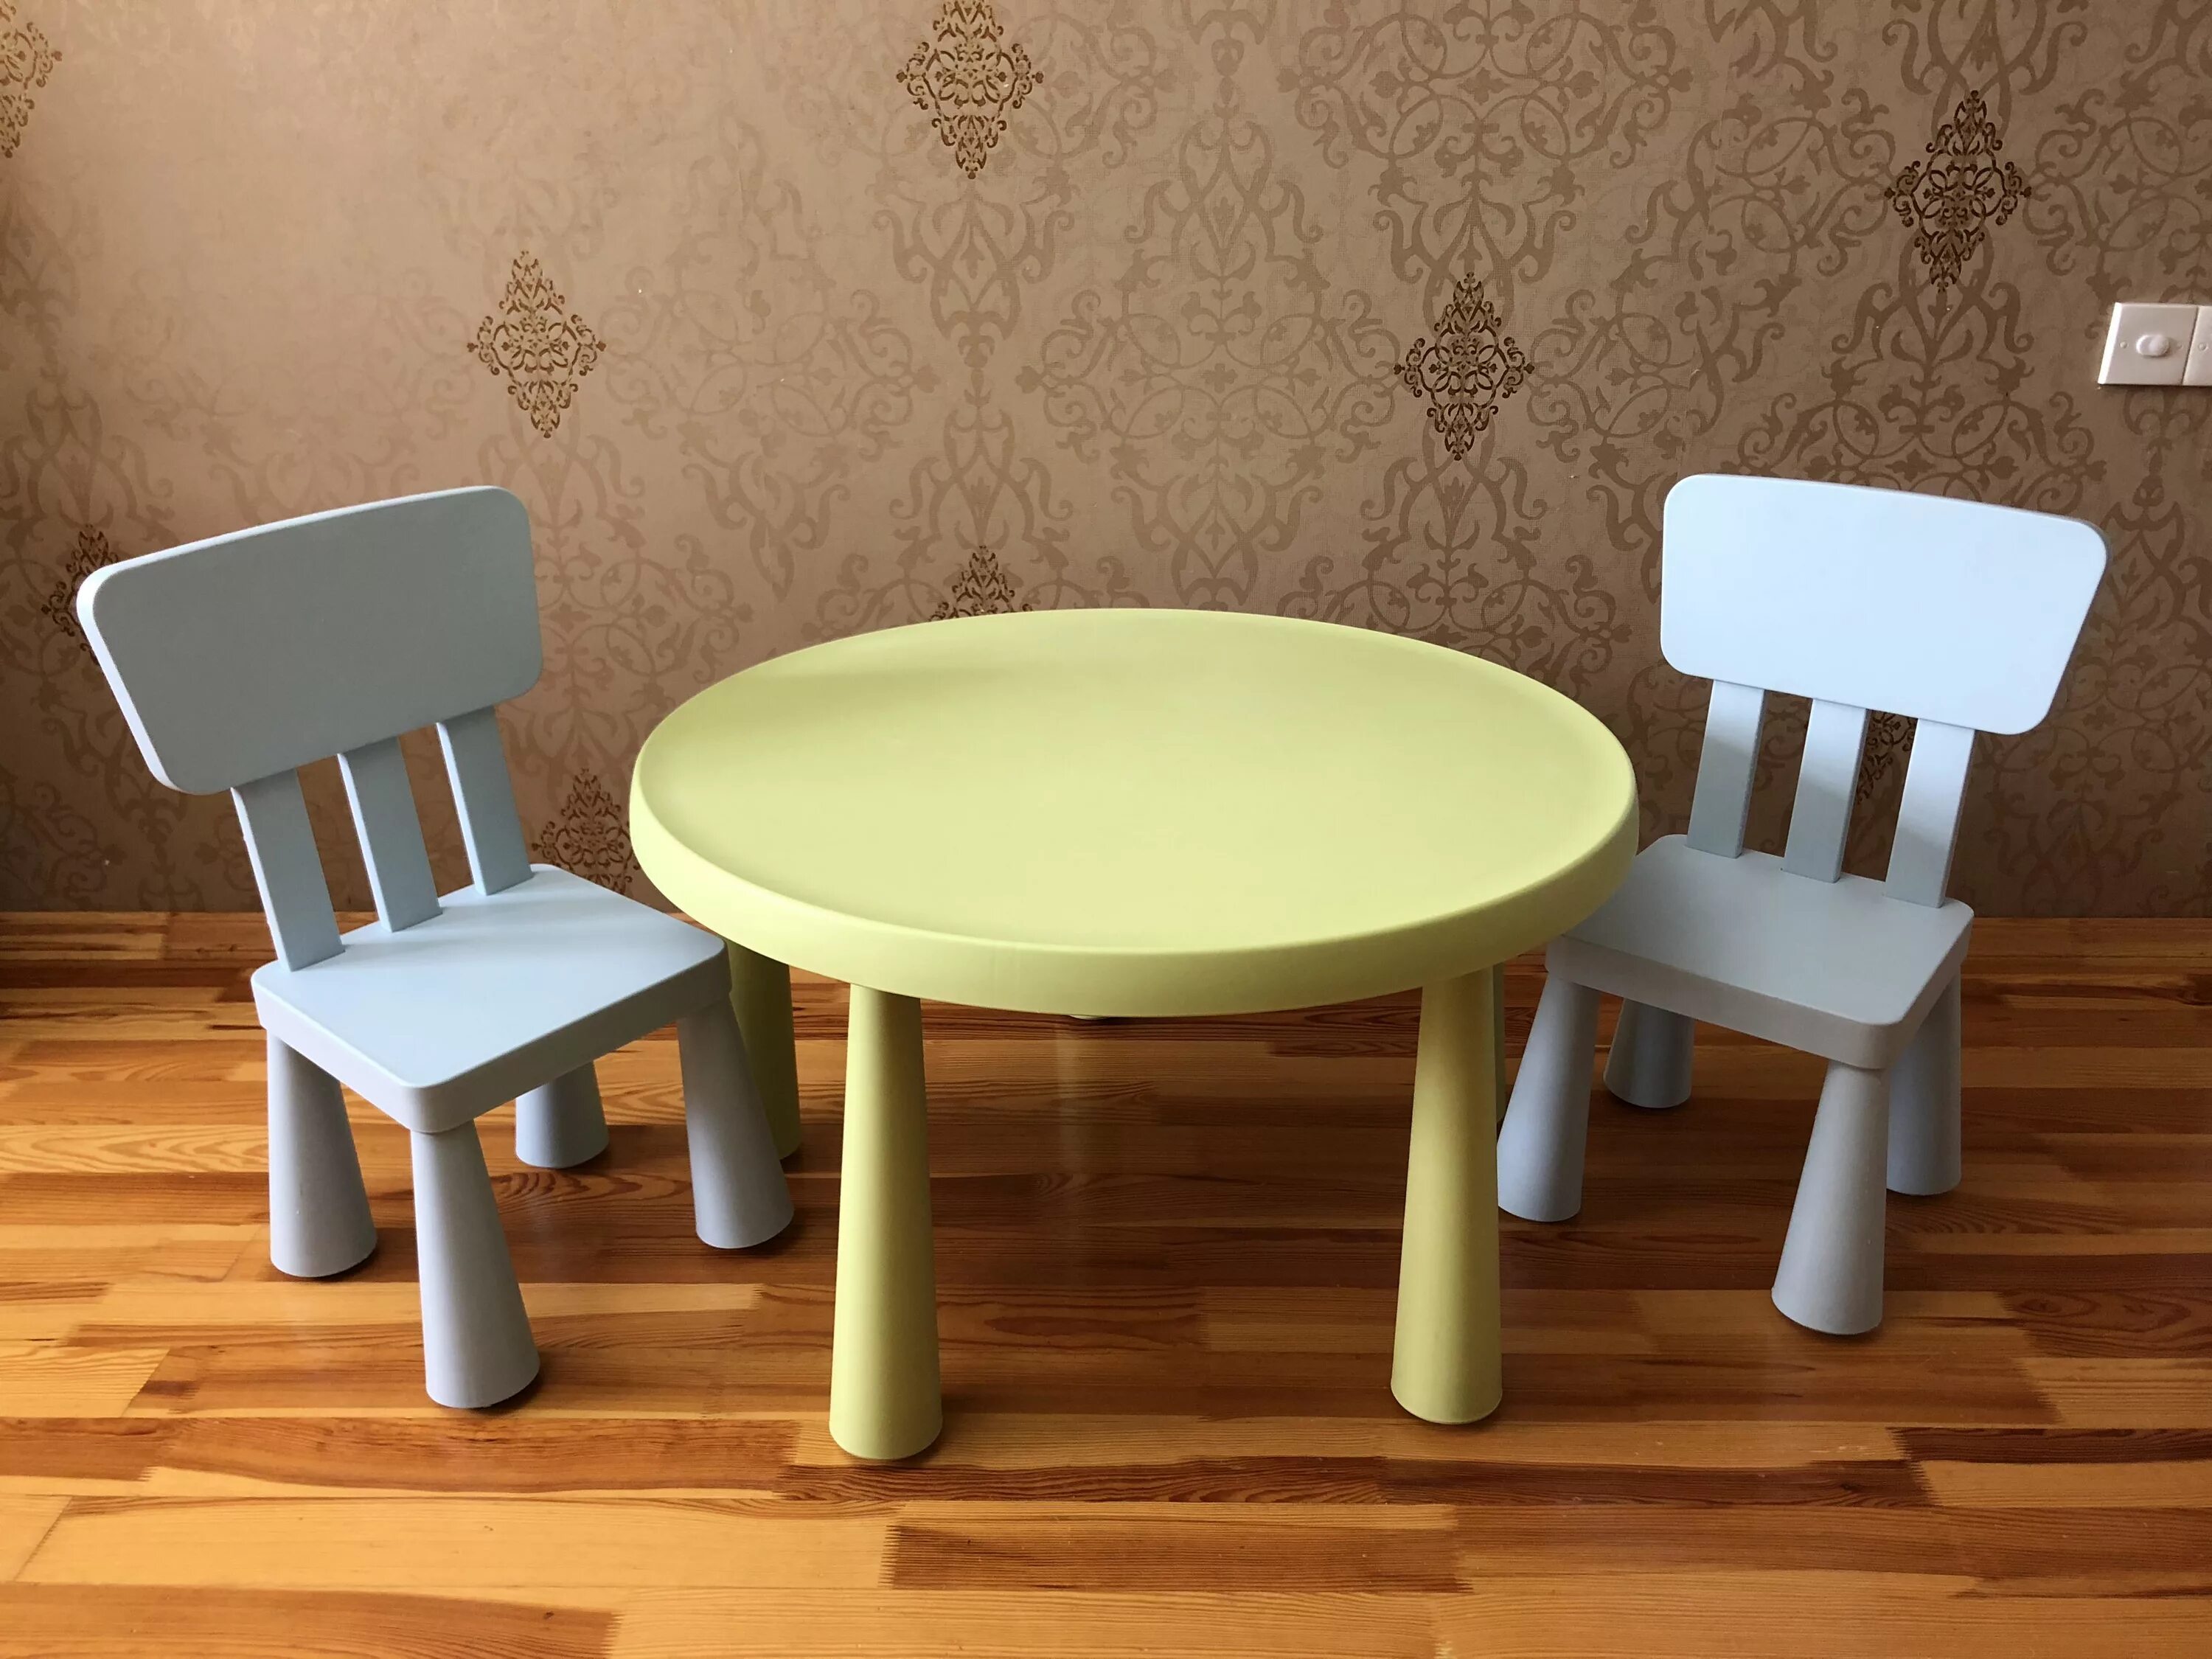 Стол и два стула. Стул детский для стола кухонного. Круглый кухонный стол и 2 стула. Столик и 2 стула. Стол в 9 раз дороже стула